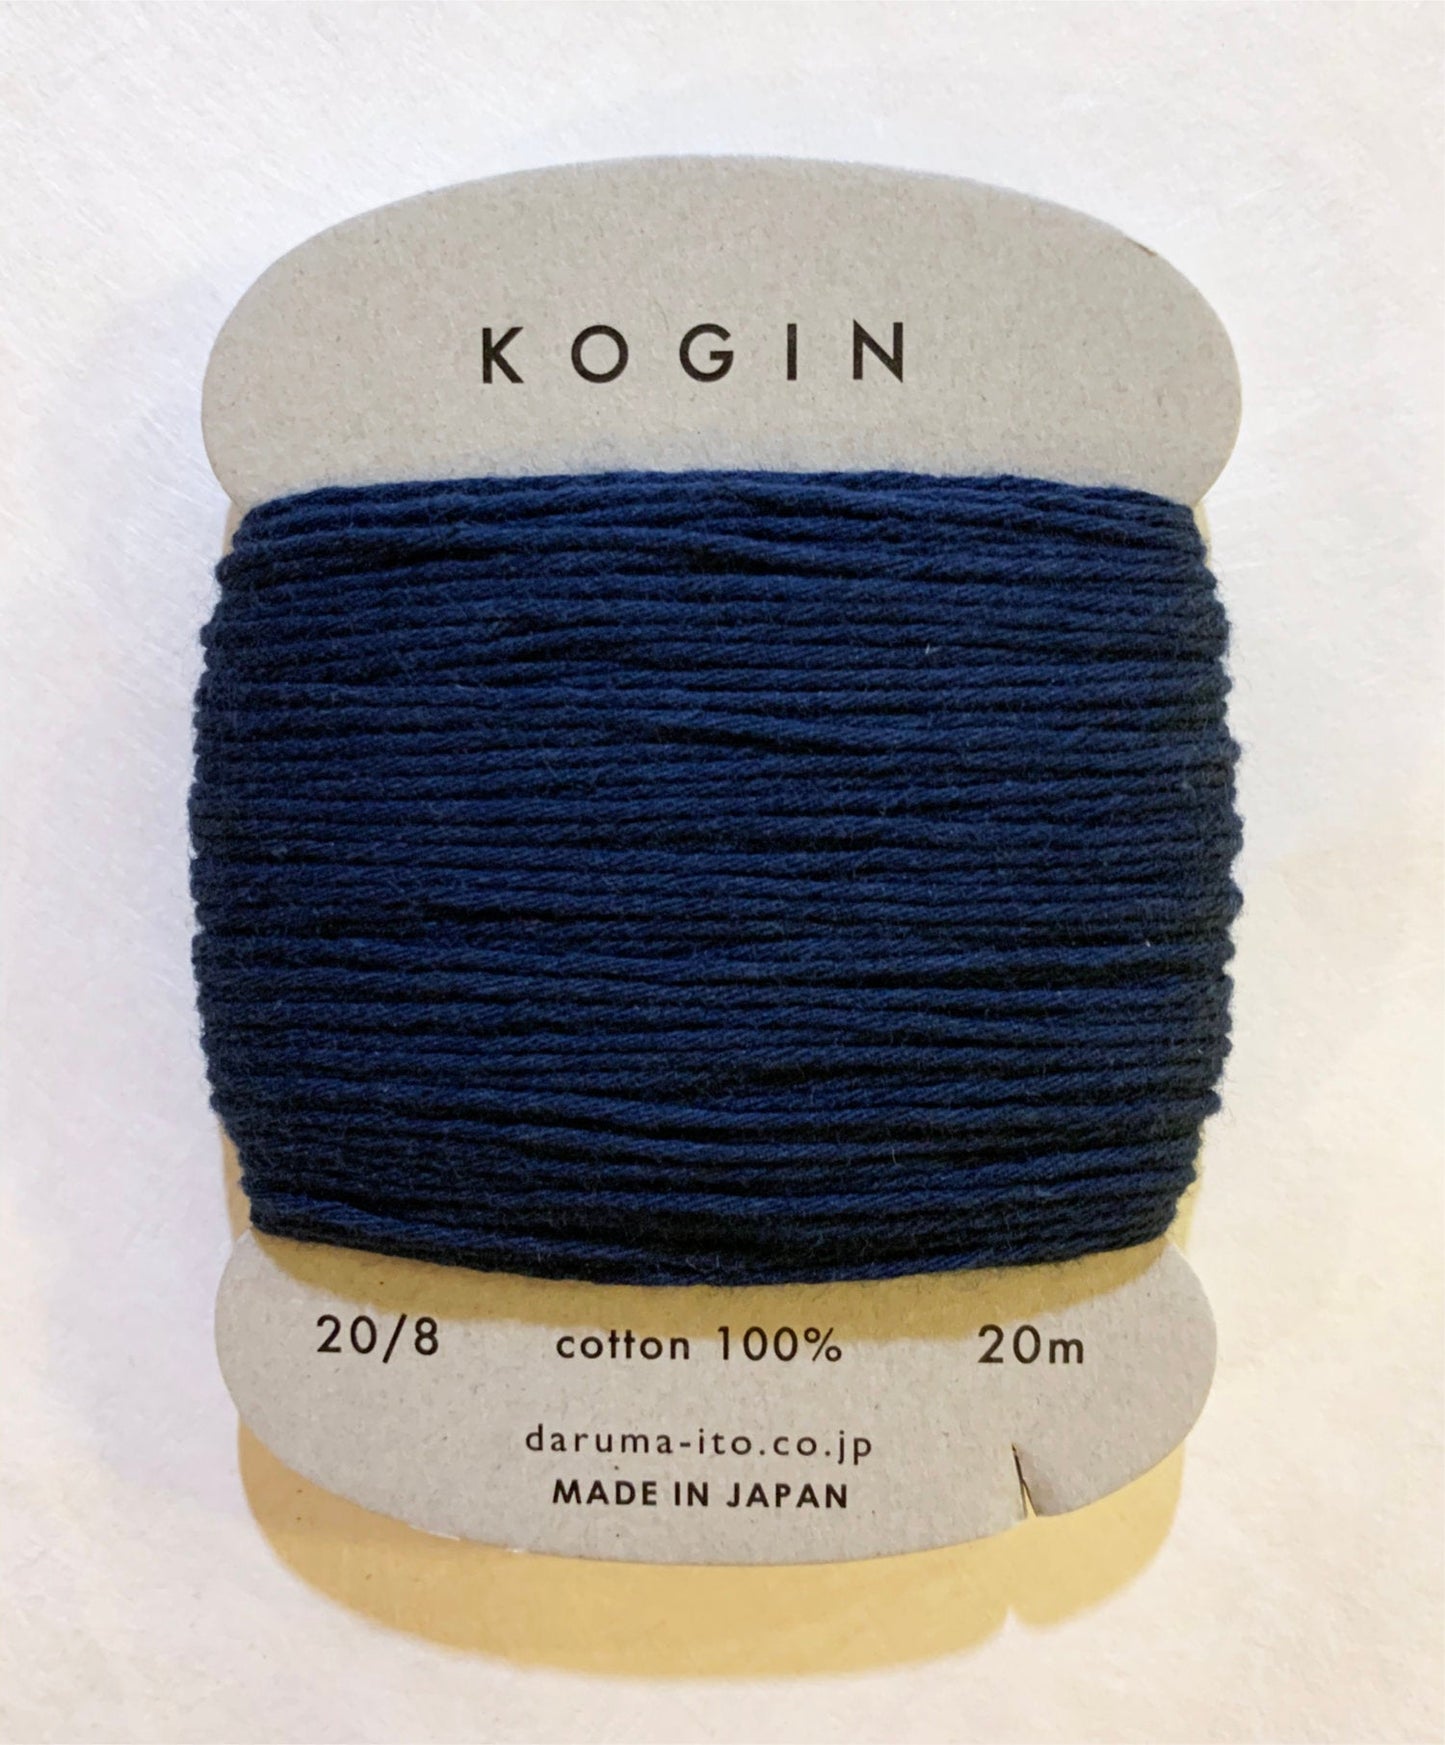 Daruma #7 INDIGO BLUE Japanese Cotton KOGIN thread 20 meter skein 20/8